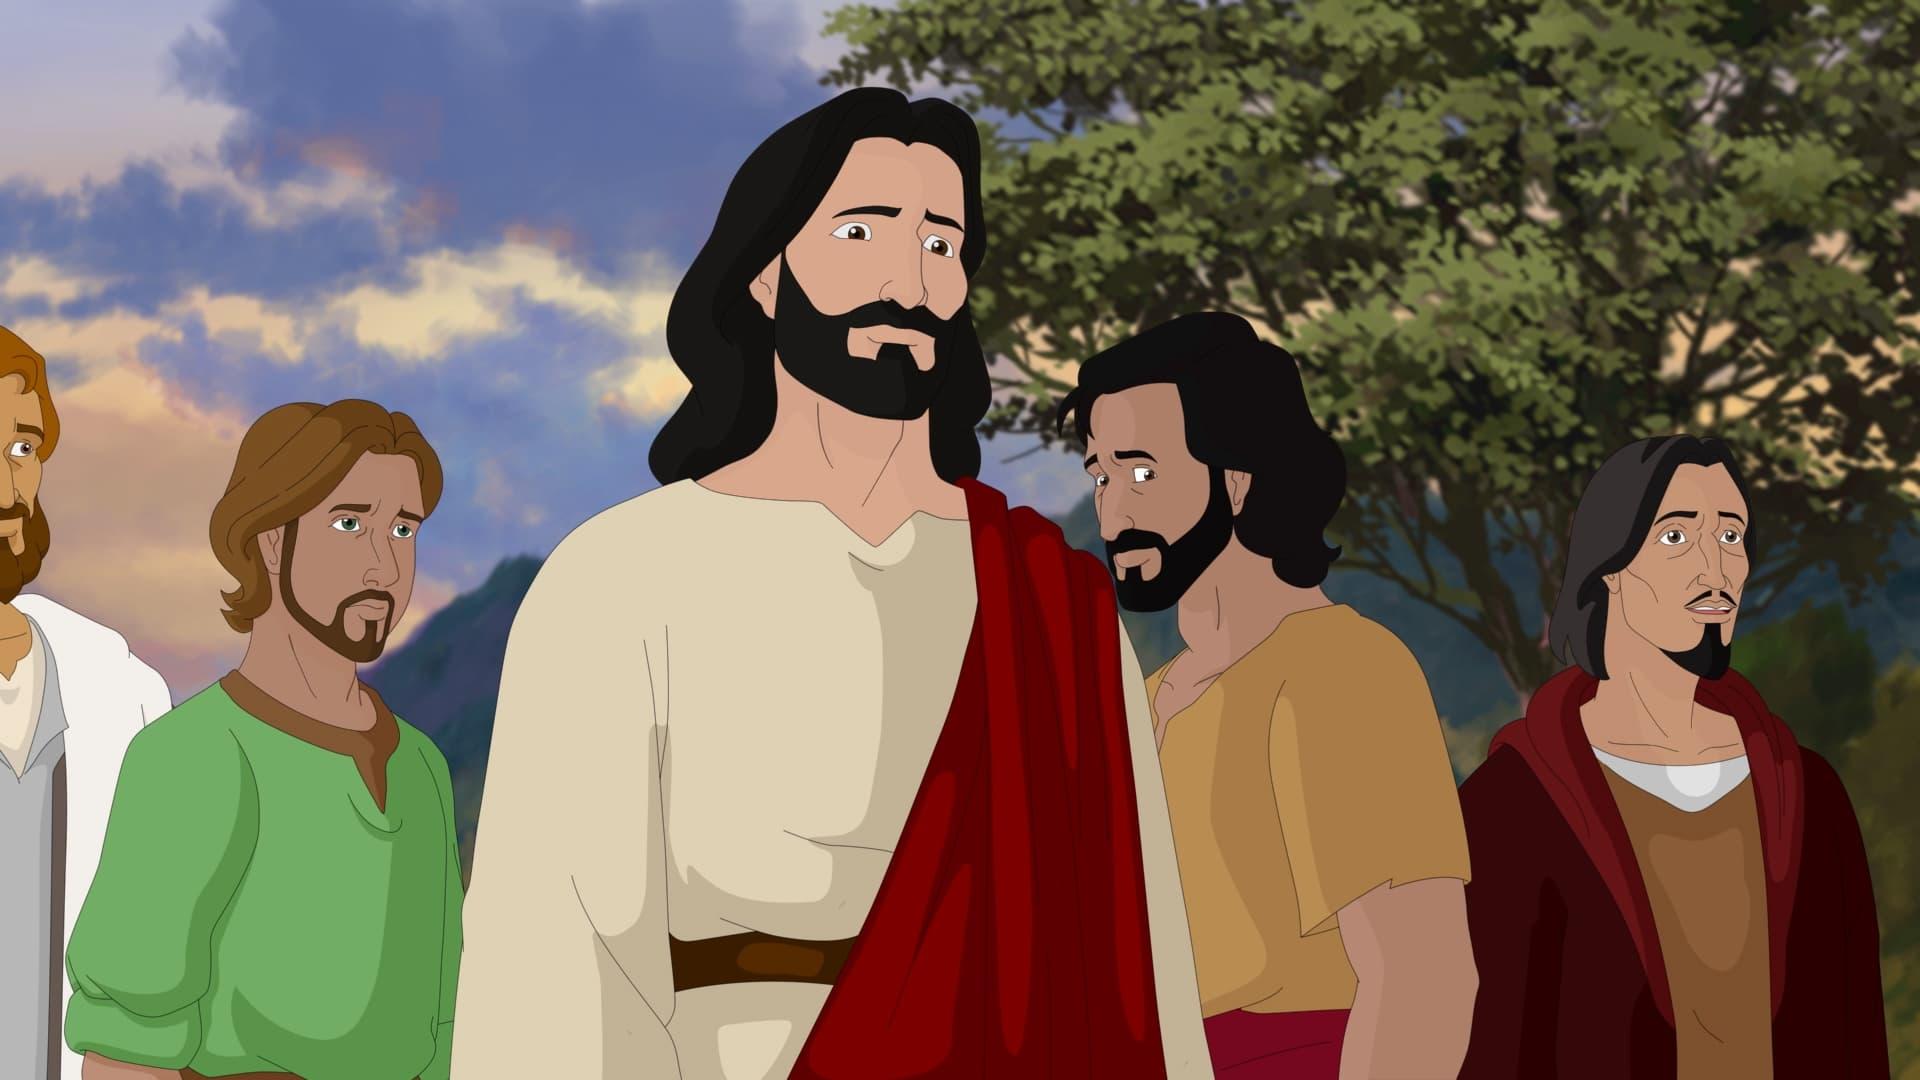 L'Incroyable Histoire de Jésus backdrop